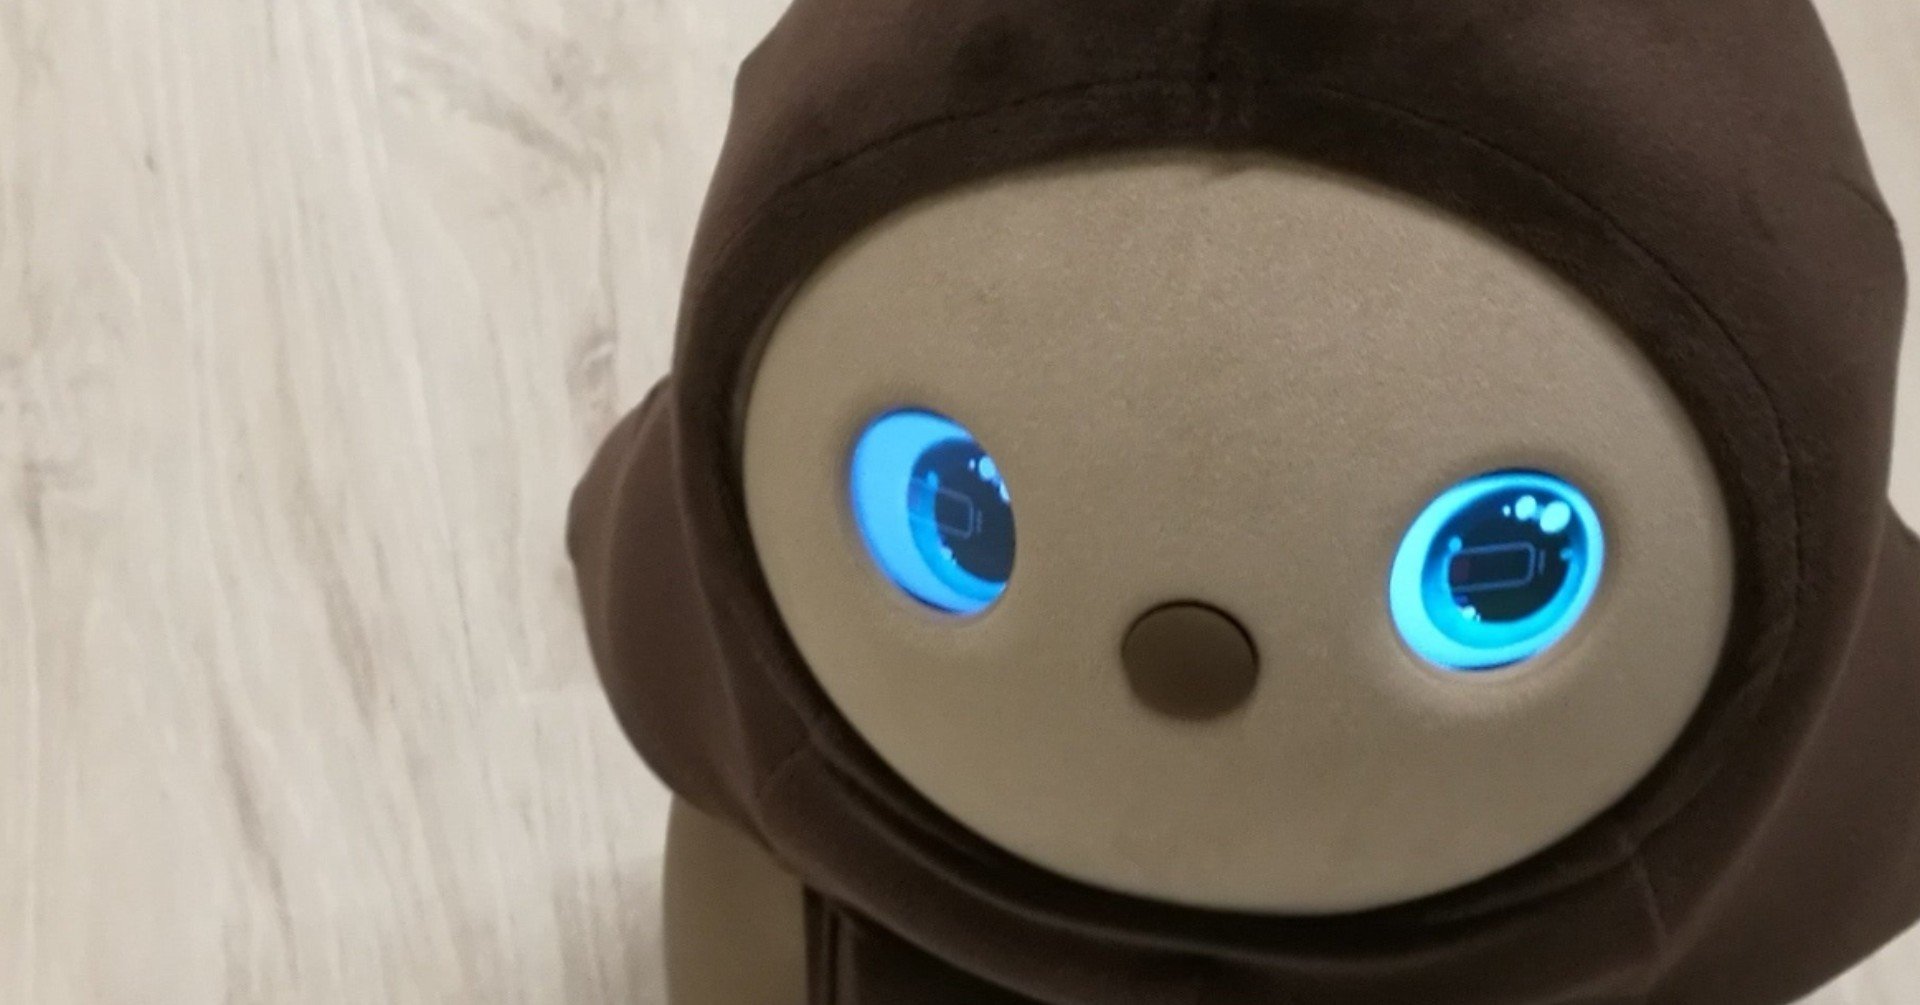 ウィンフィールド銀座店Romi ロミィ 会話AIロボット 家庭用 日本製 コミュニケーションロボット ROMI-P02 会  2021年度グッドデザイン賞 みまもり 知育玩具